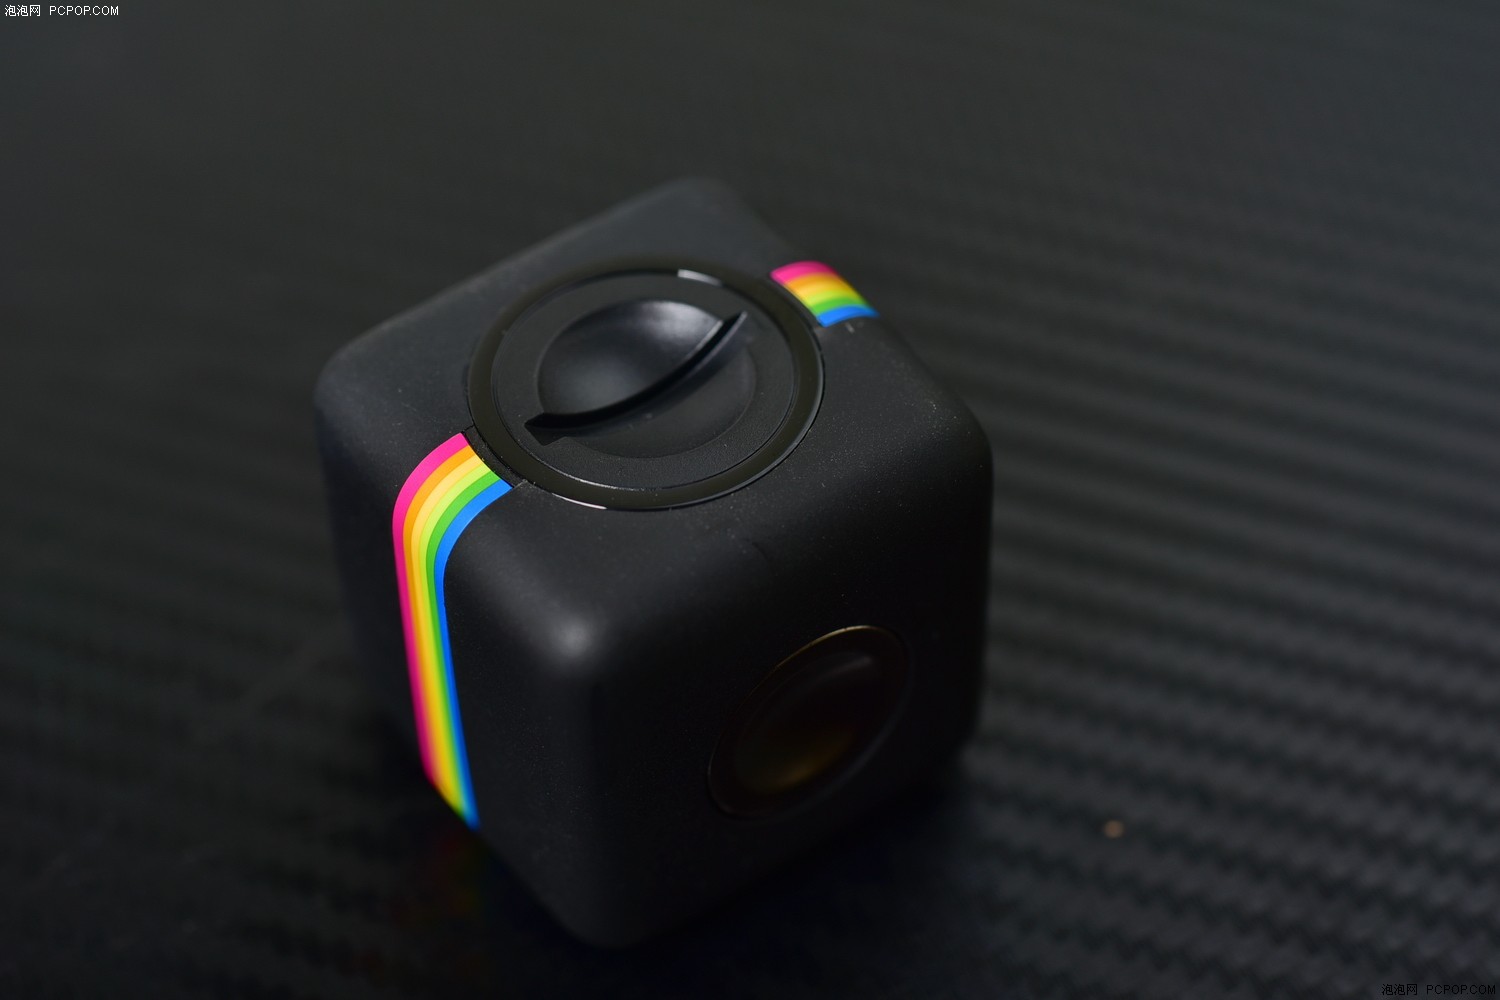 彩虹小魔方 Polaroid Cube摄像机试玩